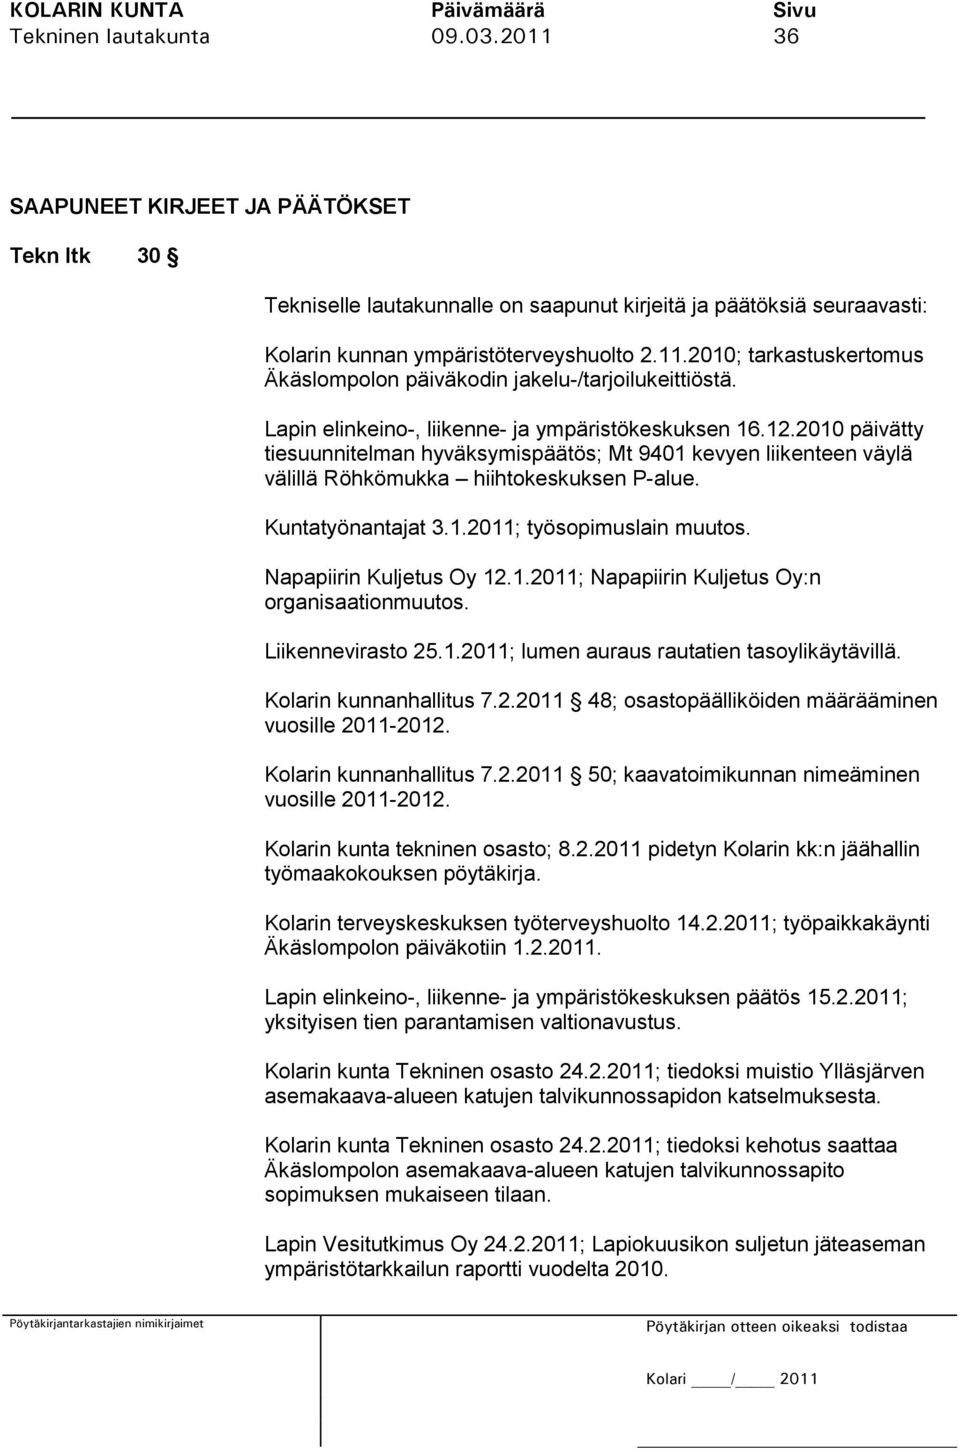 Napapiirin Kuljetus Oy 12.1.2011; Napapiirin Kuljetus Oy:n organisaationmuutos. Liikennevirasto 25.1.2011; lumen auraus rautatien tasoylikäytävillä. Kolarin kunnanhallitus 7.2.2011 48; osastopäälliköiden määrääminen vuosille 2011-2012.